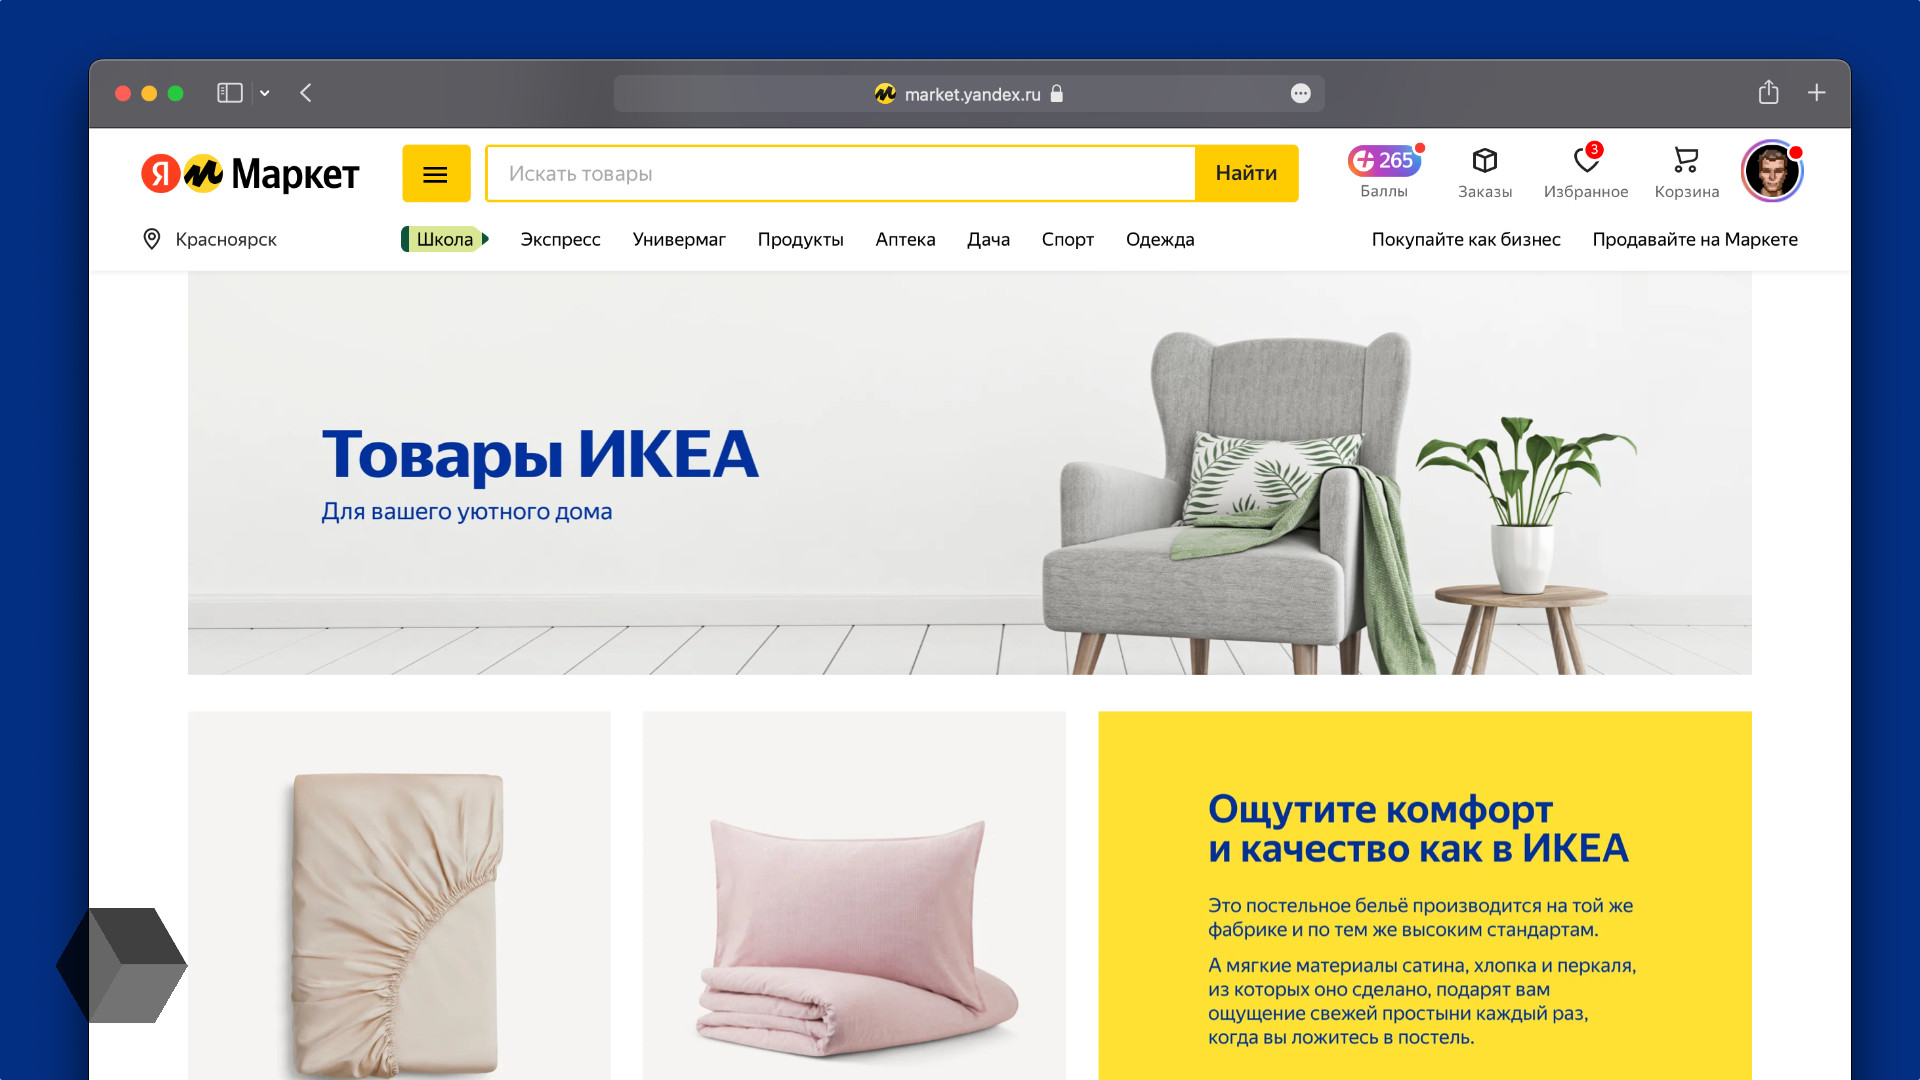 Доставка мебели икеа в россию. Ikea товары. Товары из икеа.